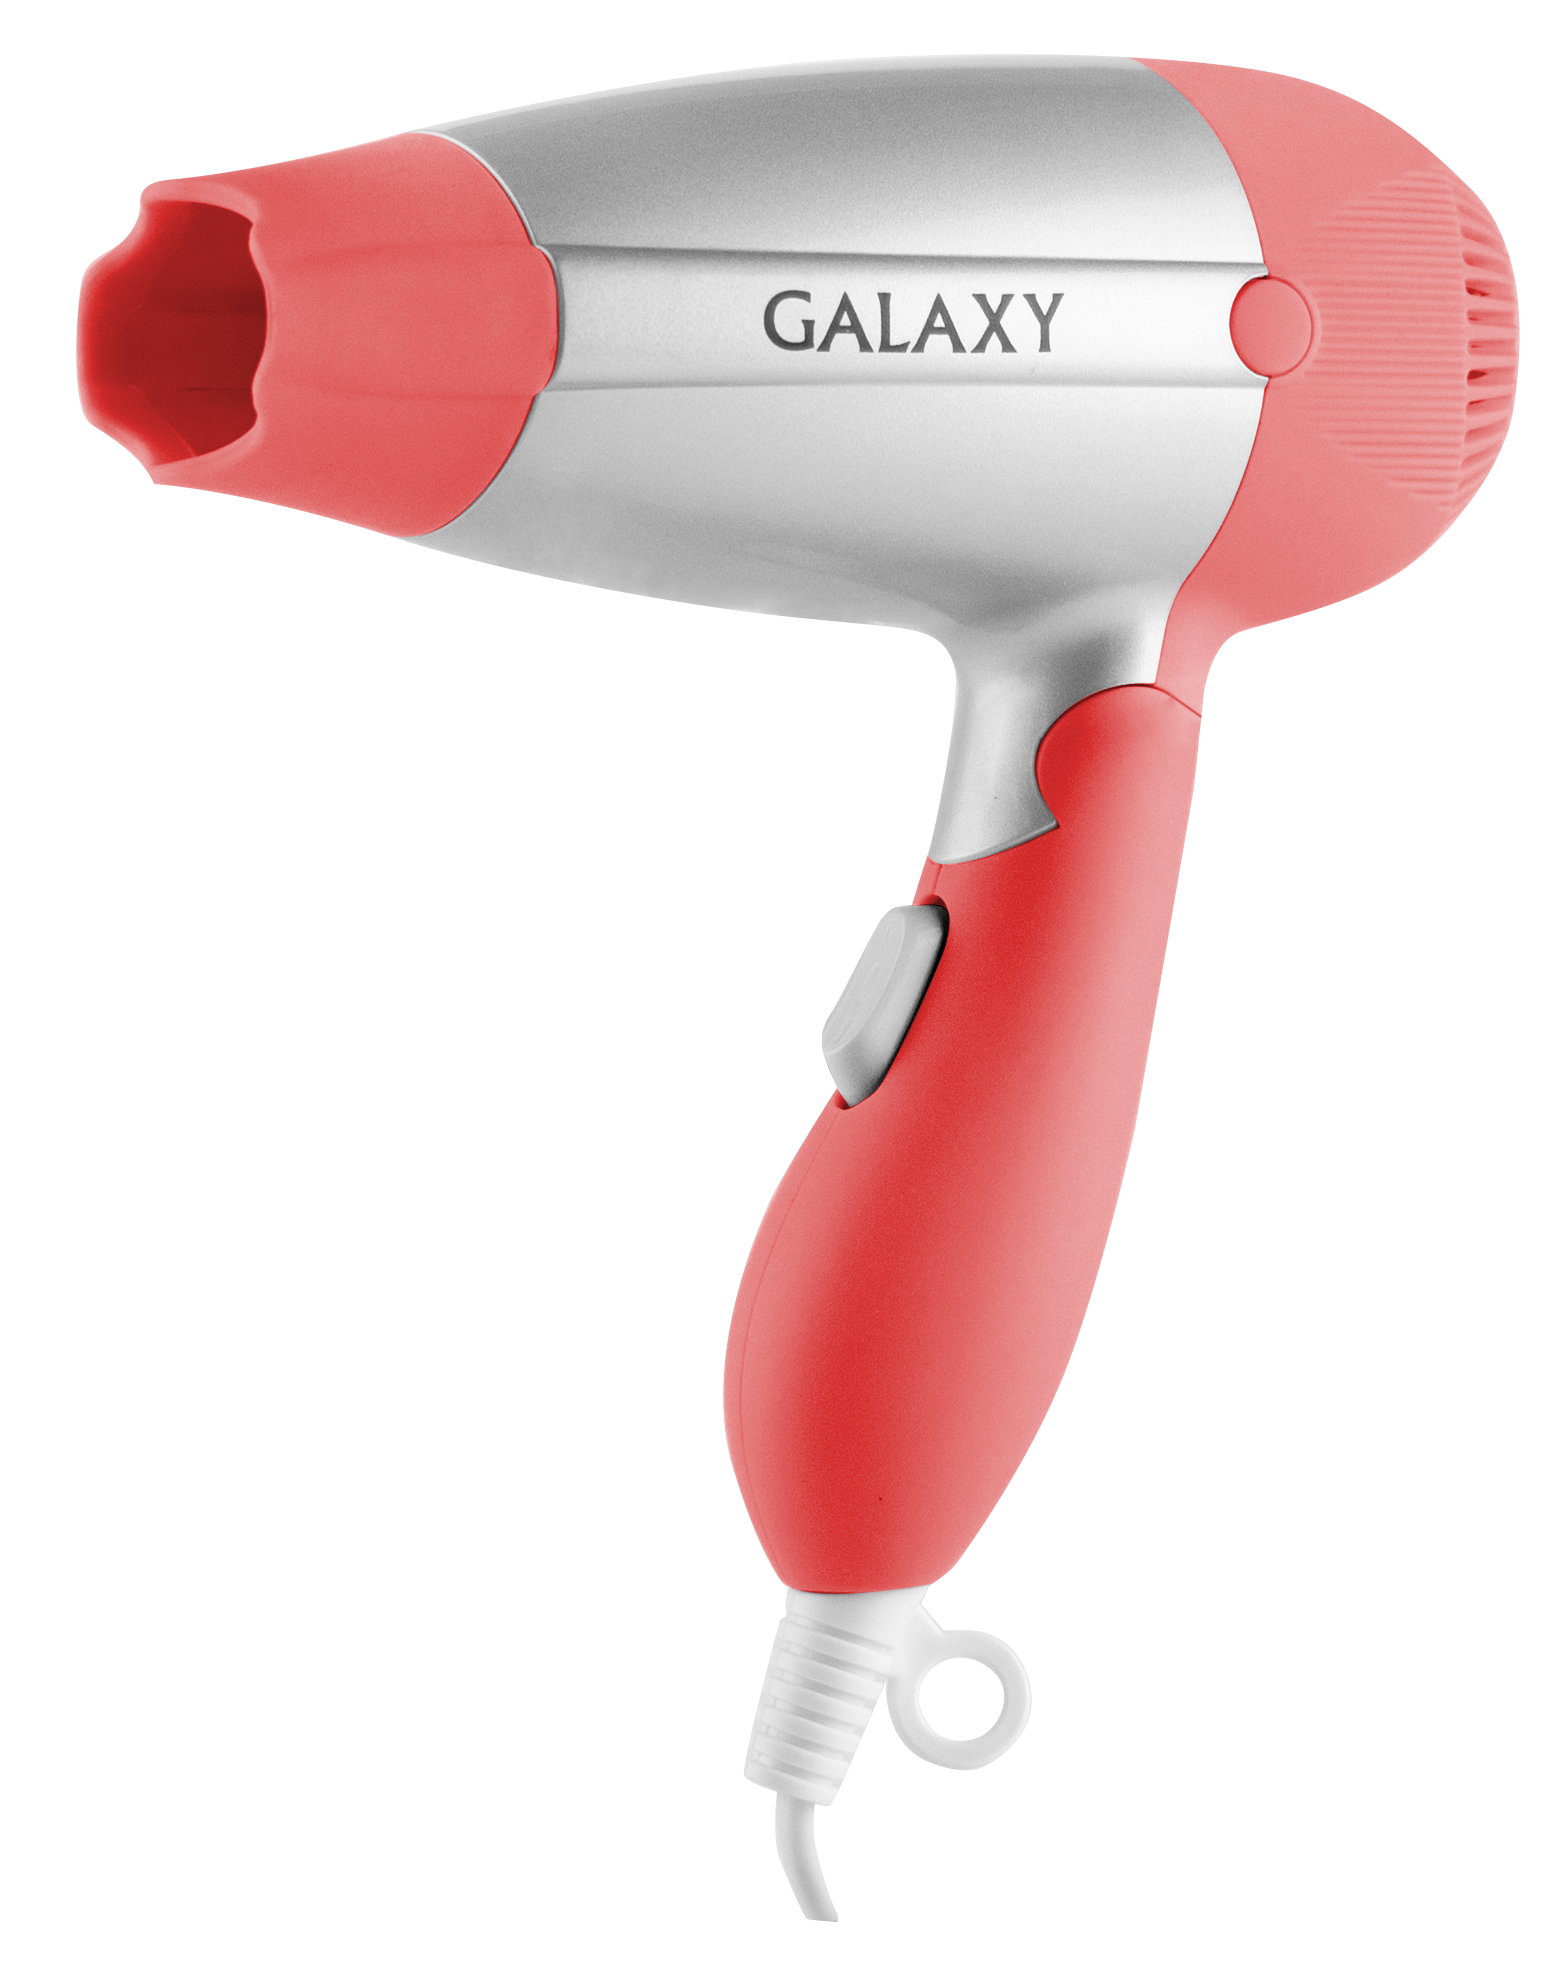 Фен Galaxy GL 4301 коралловый (1000 Вт,+ 2 скорости, концентратор, складная ручка, 20шт/уп)